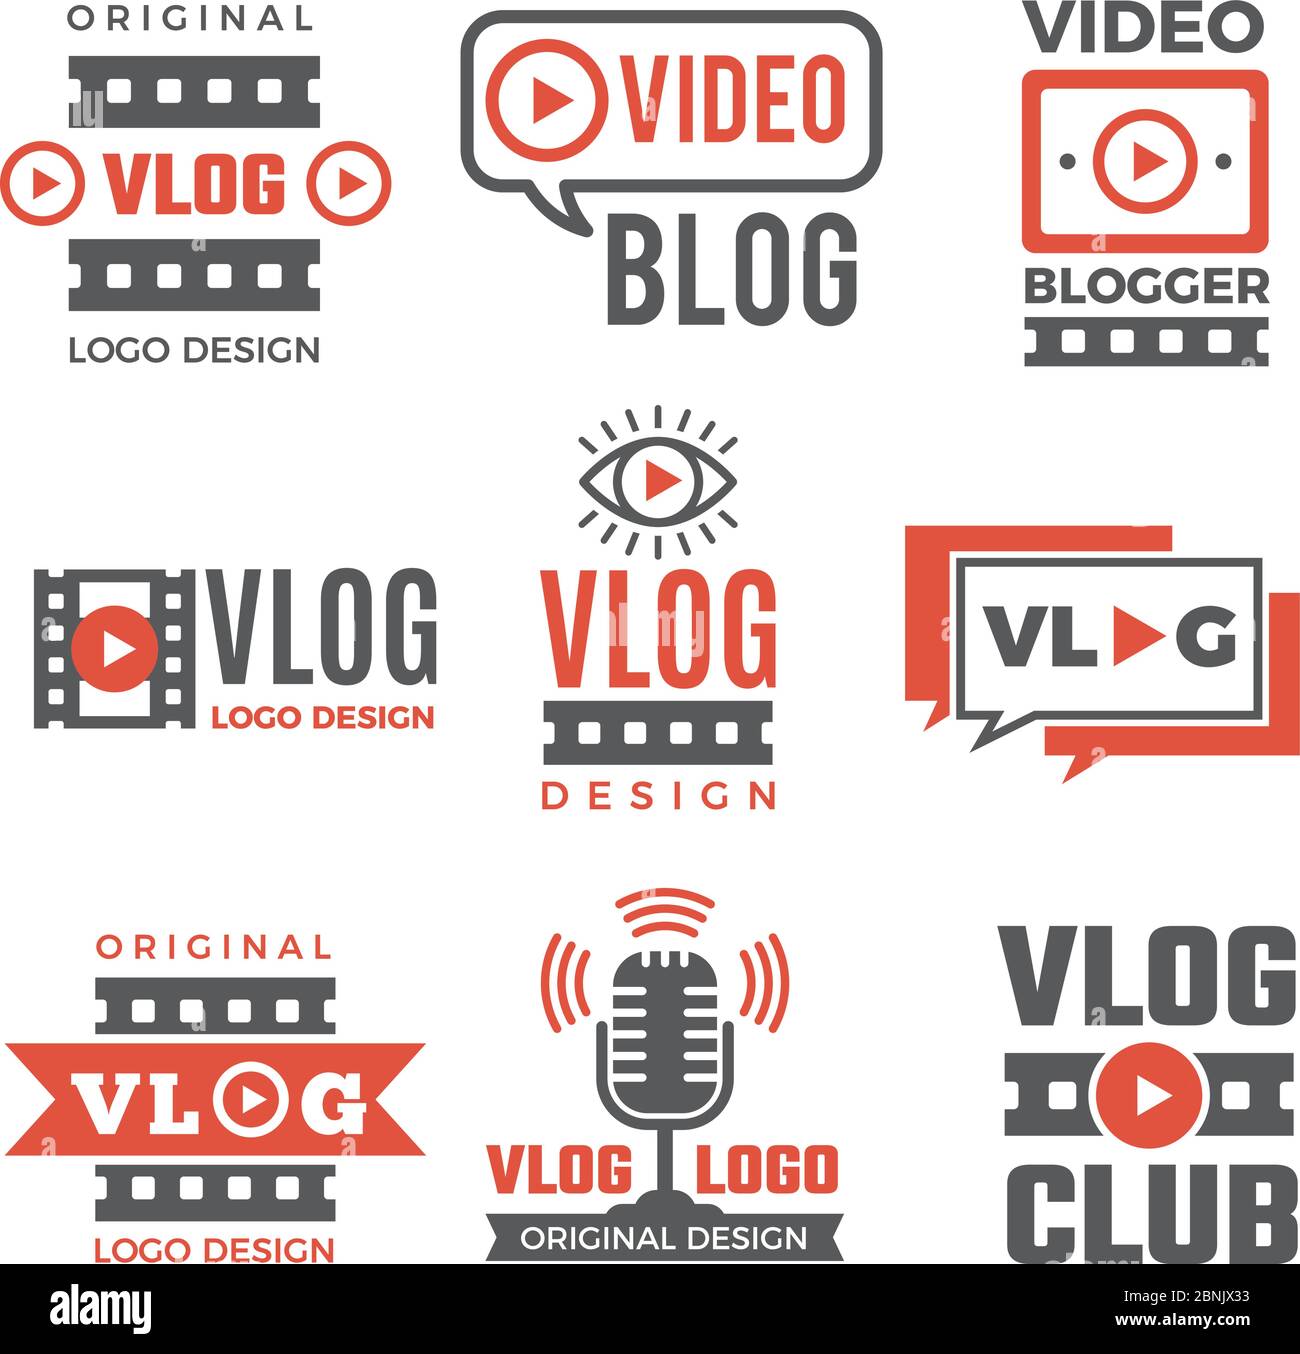 Satz von Logos für Videoblogger Stock Vektor